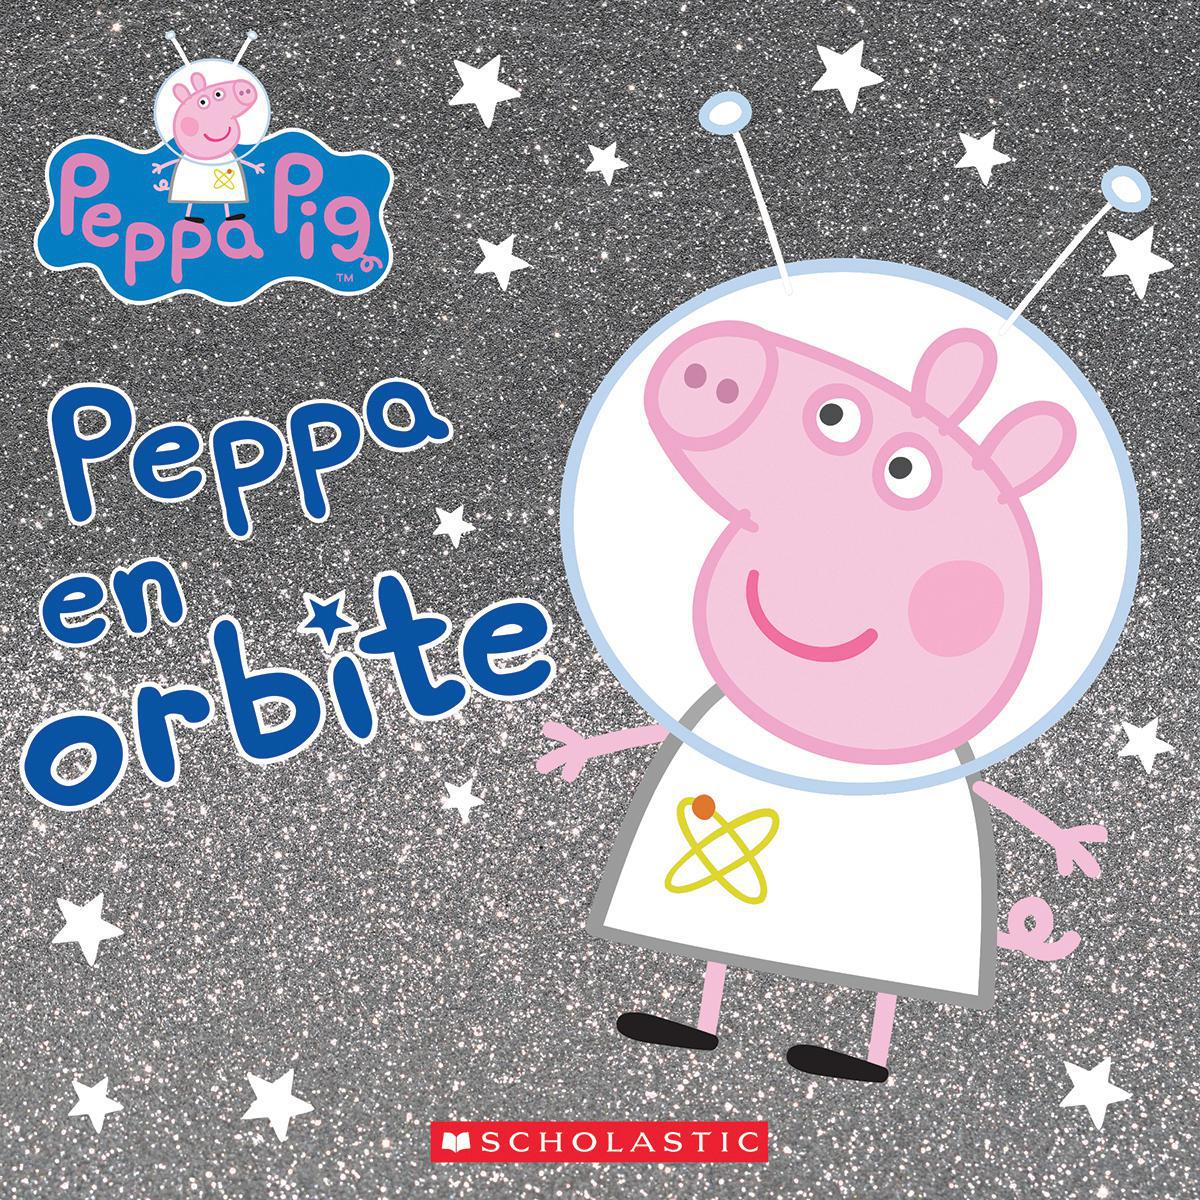  Peppa Pig : Peppa en orbite 